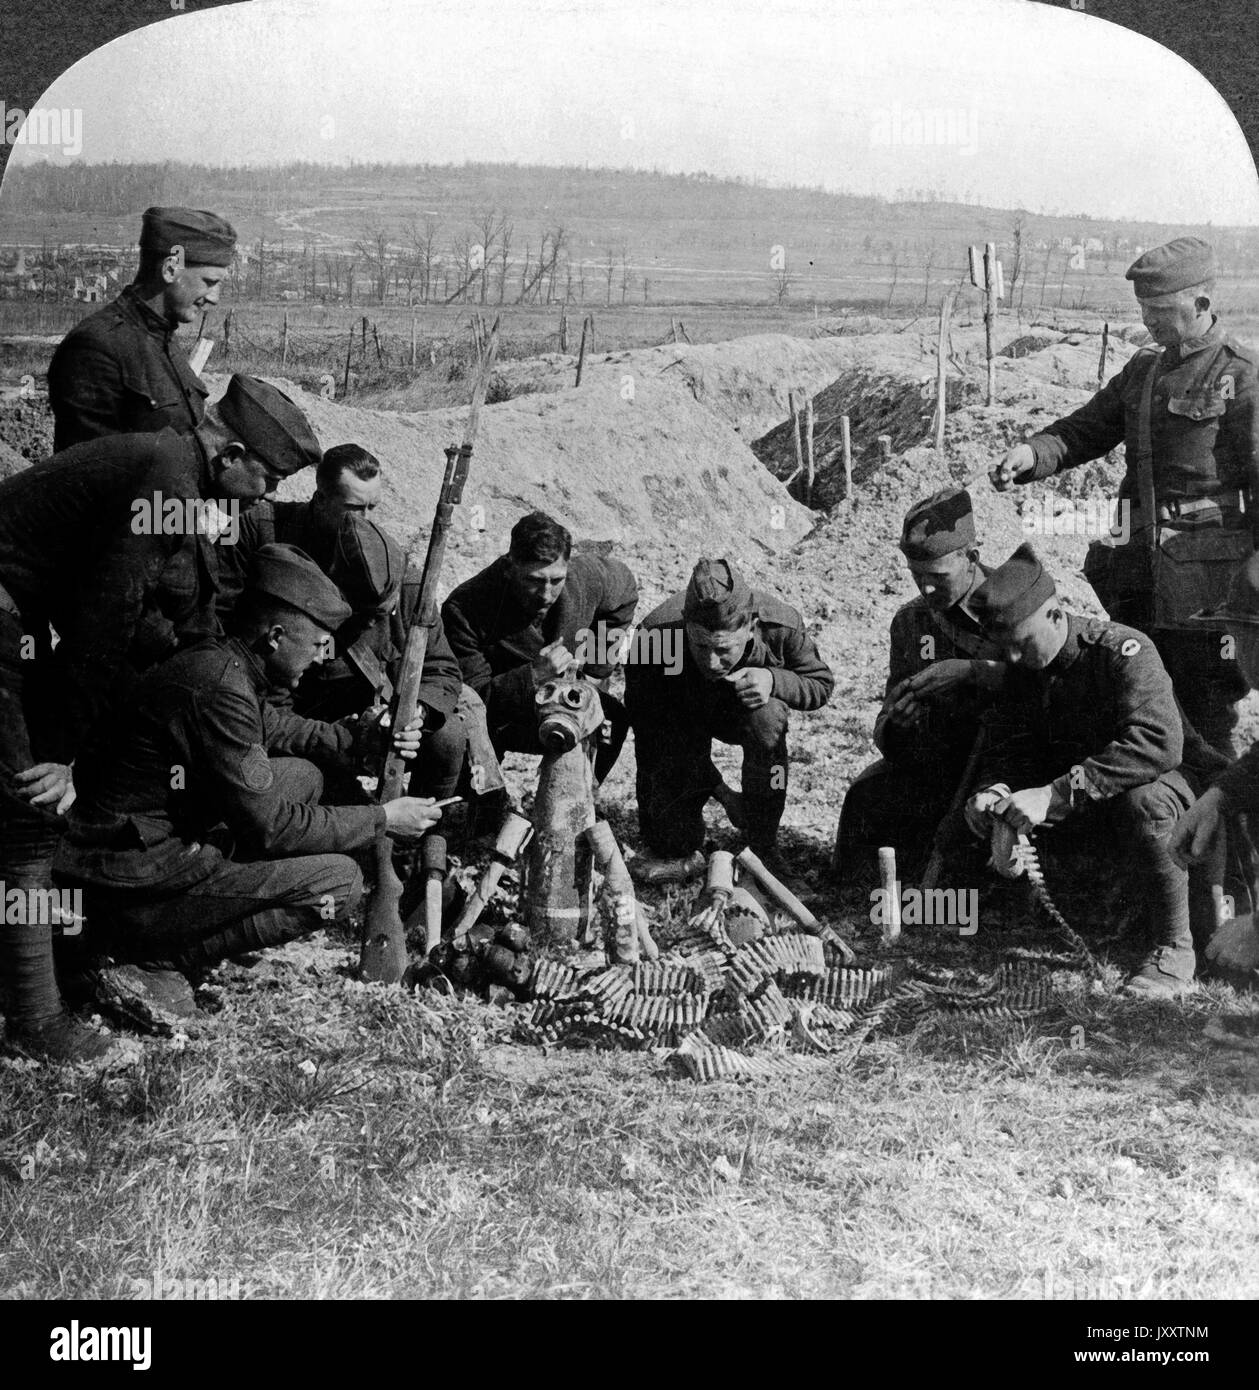 Sounvenirs sammeln auf dem Schlachtfeld von Fort de Brimont, Frankreich Ende 1918. Sul campo di battaglia, raccogliendo souvenir, Fort de Brimont, Francia, fine 1918. Foto Stock